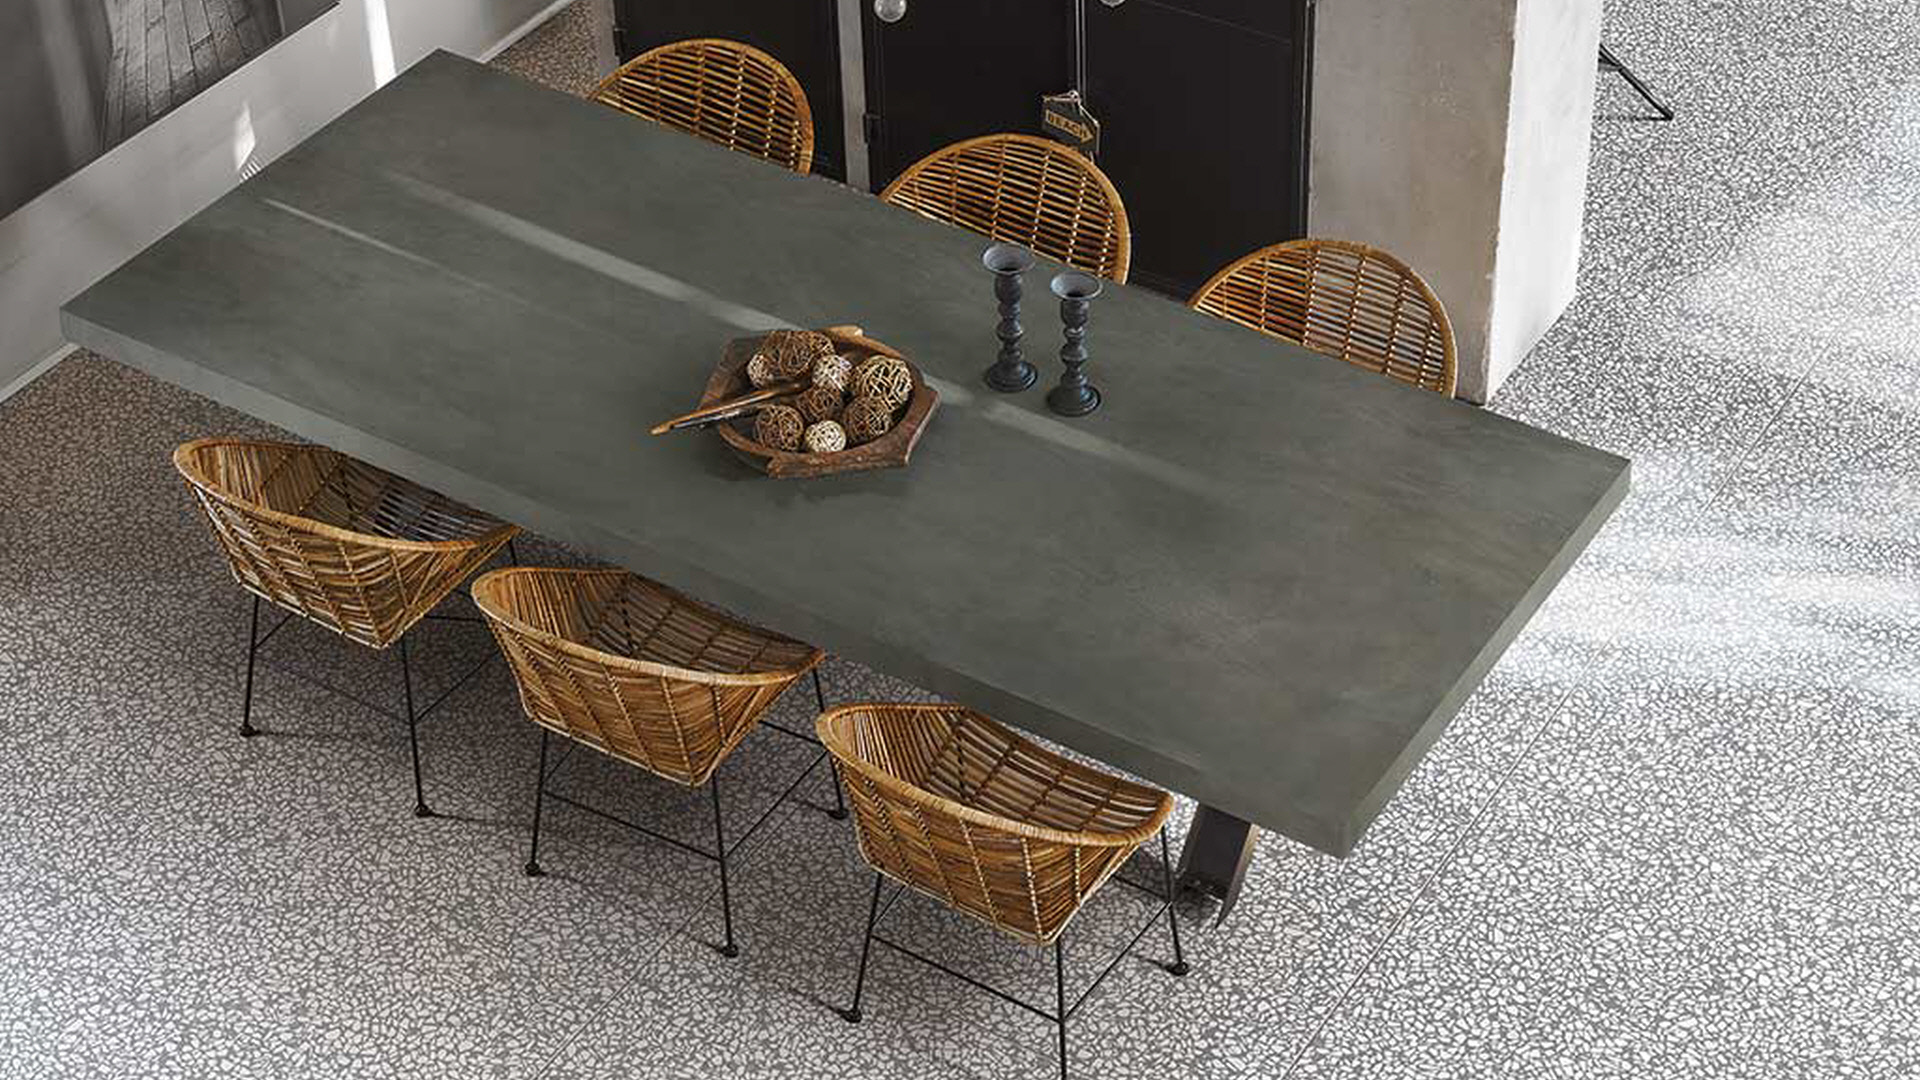 Stoly, stolové desky | Speciální výroba | Koupelny ČERO